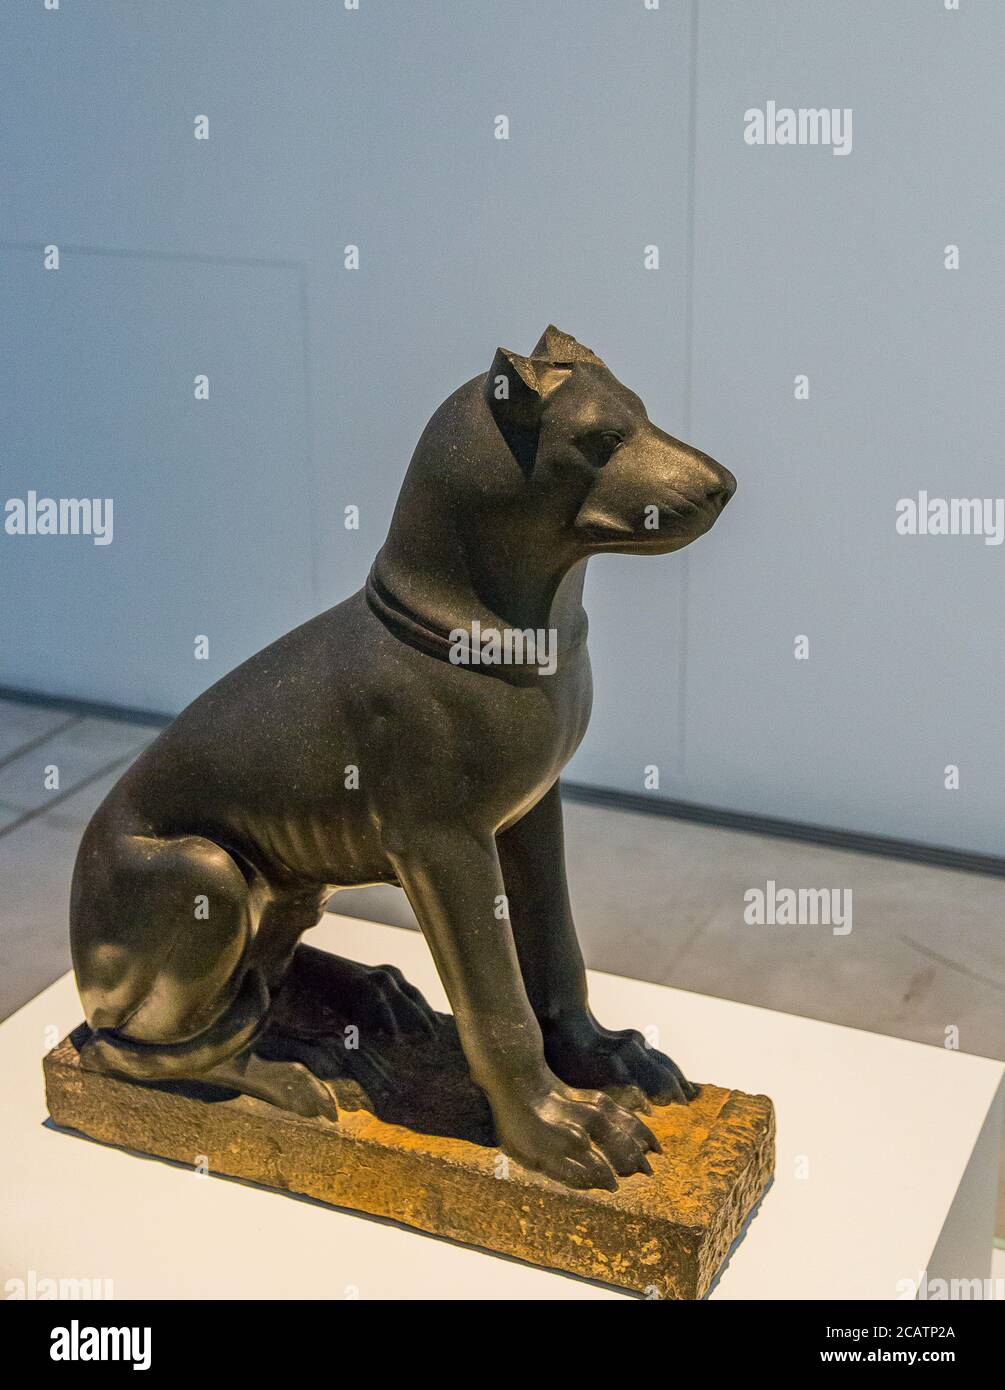 Mostra 'il regno animale nell'antico Egitto', organizzata nel 2015 dal Museo del Louvre di Lens. Statua del cane di uno stile insolito. Foto Stock